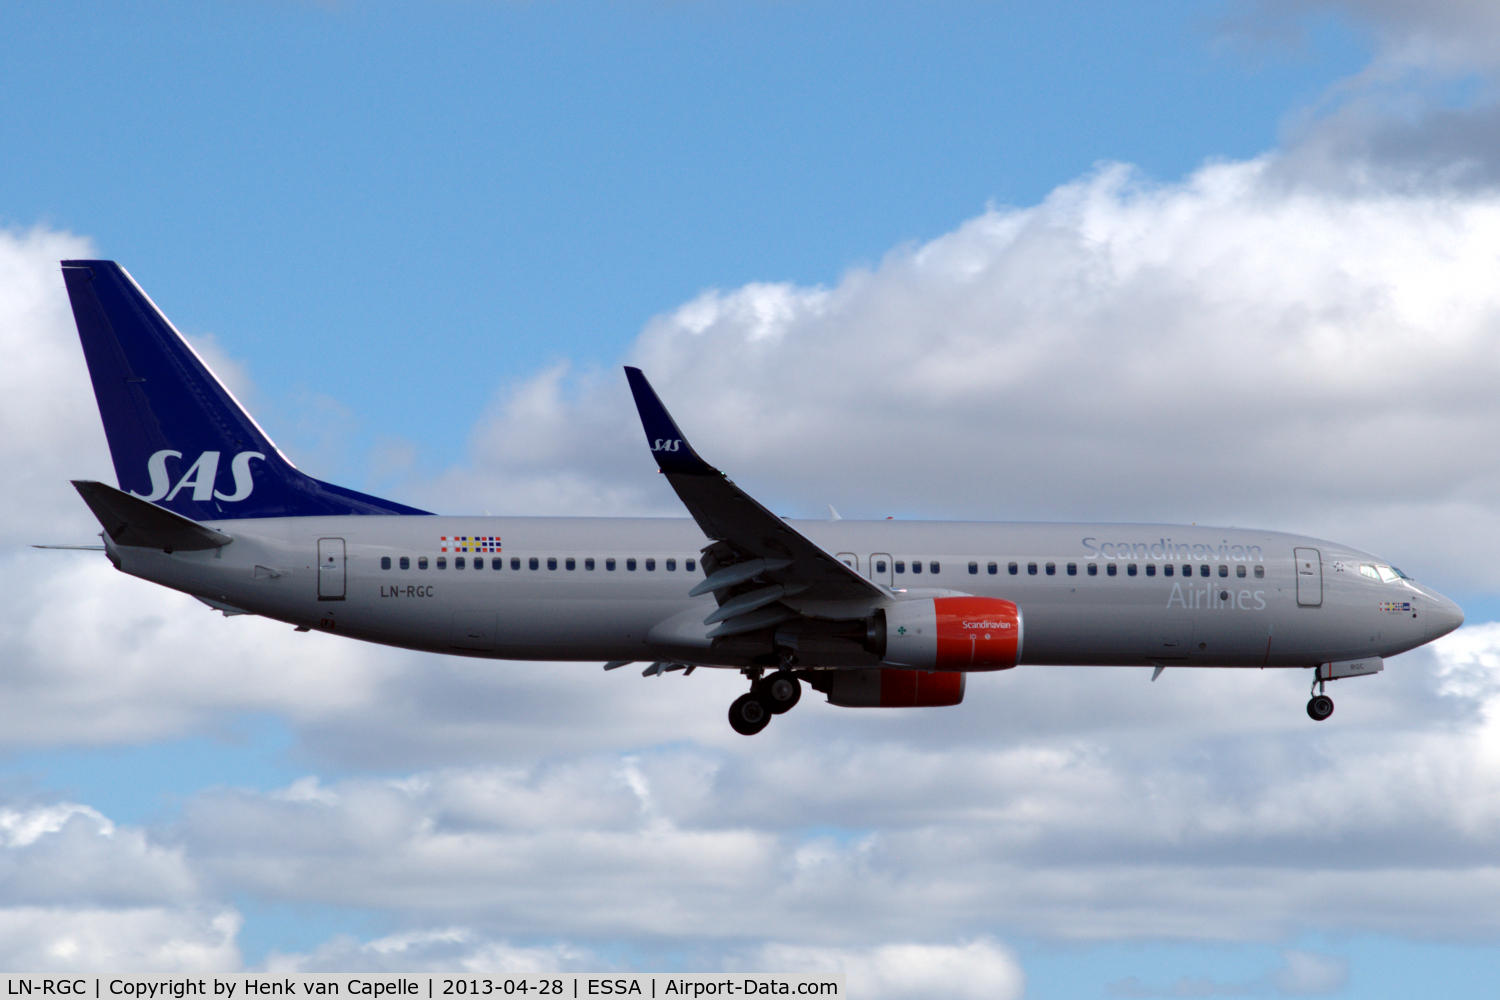 LN-RGC, 2012 Boeing 737-86N C/N 41257, SAS Boeing 737-800 on final approach to Stockholm Arlanda airport, Sweden.